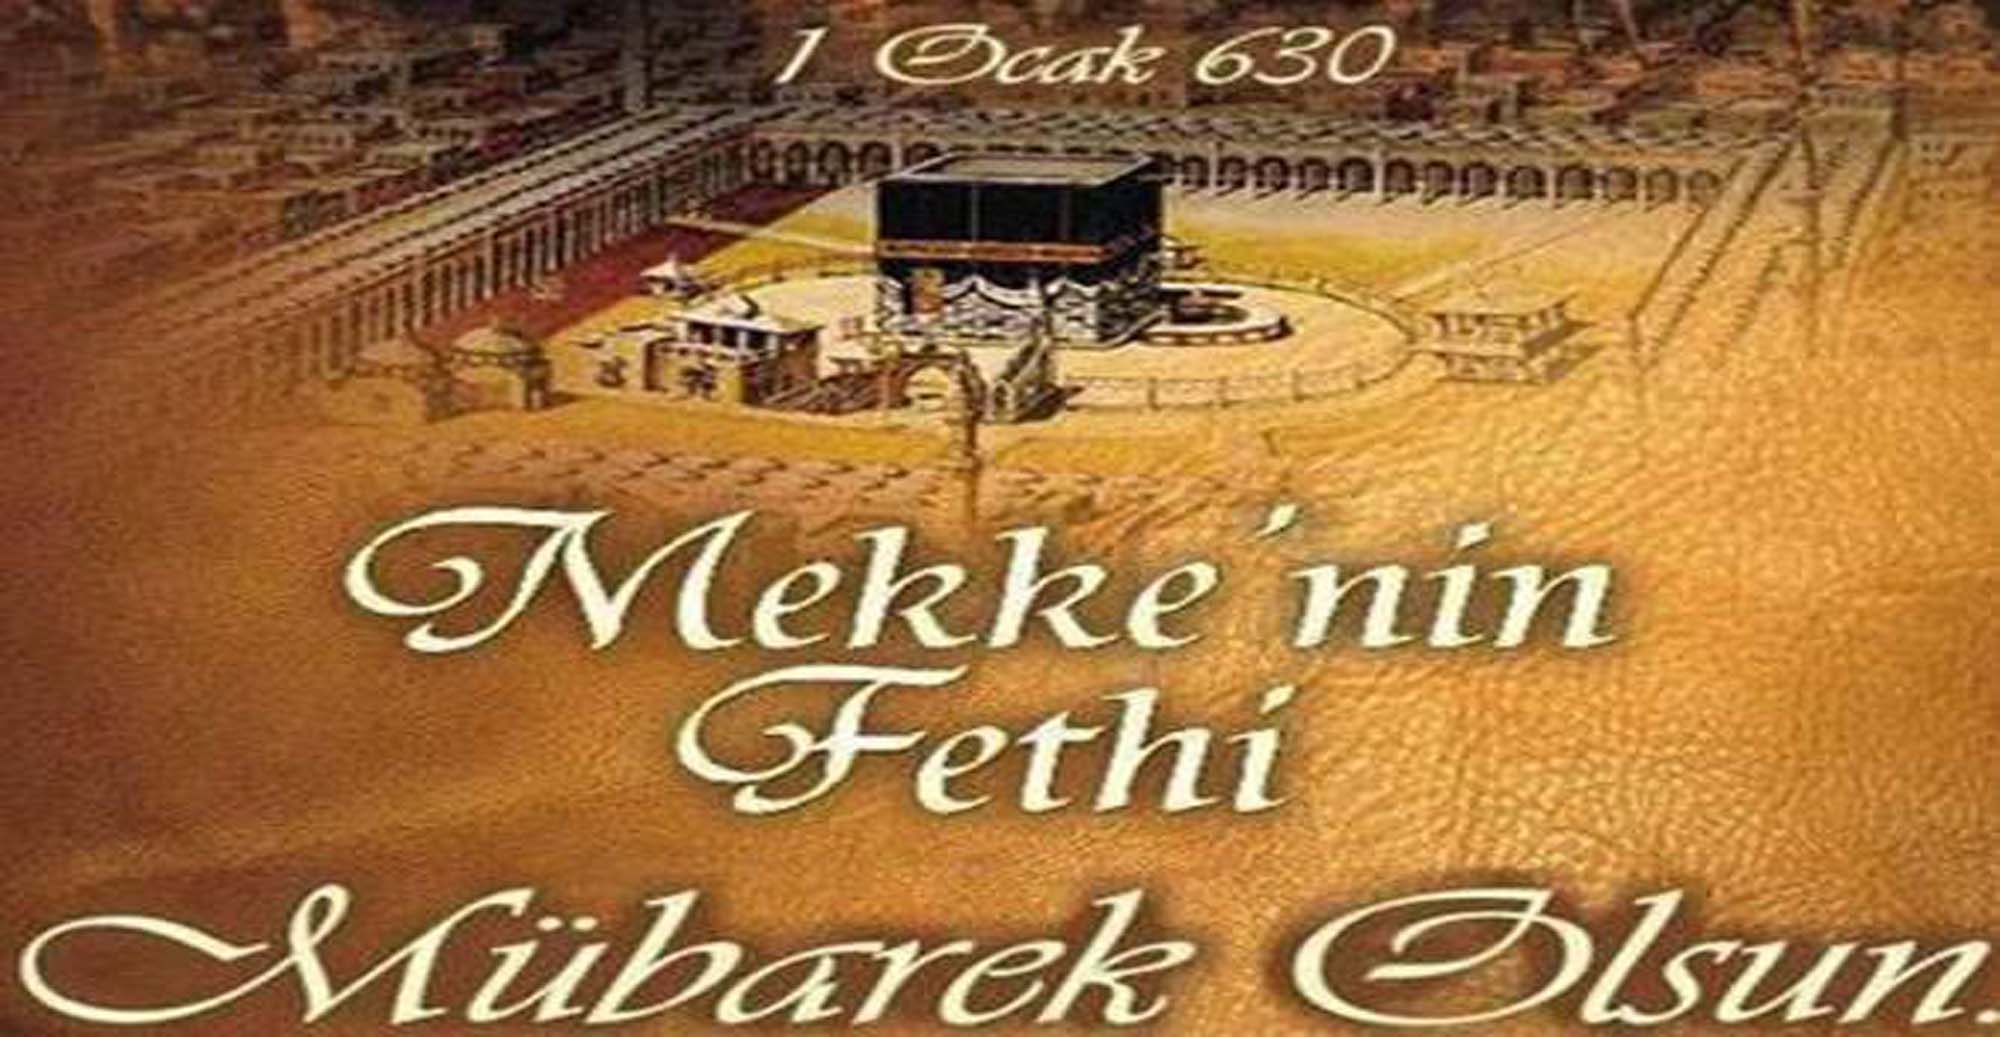 31 Aralık Mekke'nin fethi ile alakalı sözler, ayetler | Mekke'nin fethi kutlama mesajları, resimli, sözlü, görsel 2022